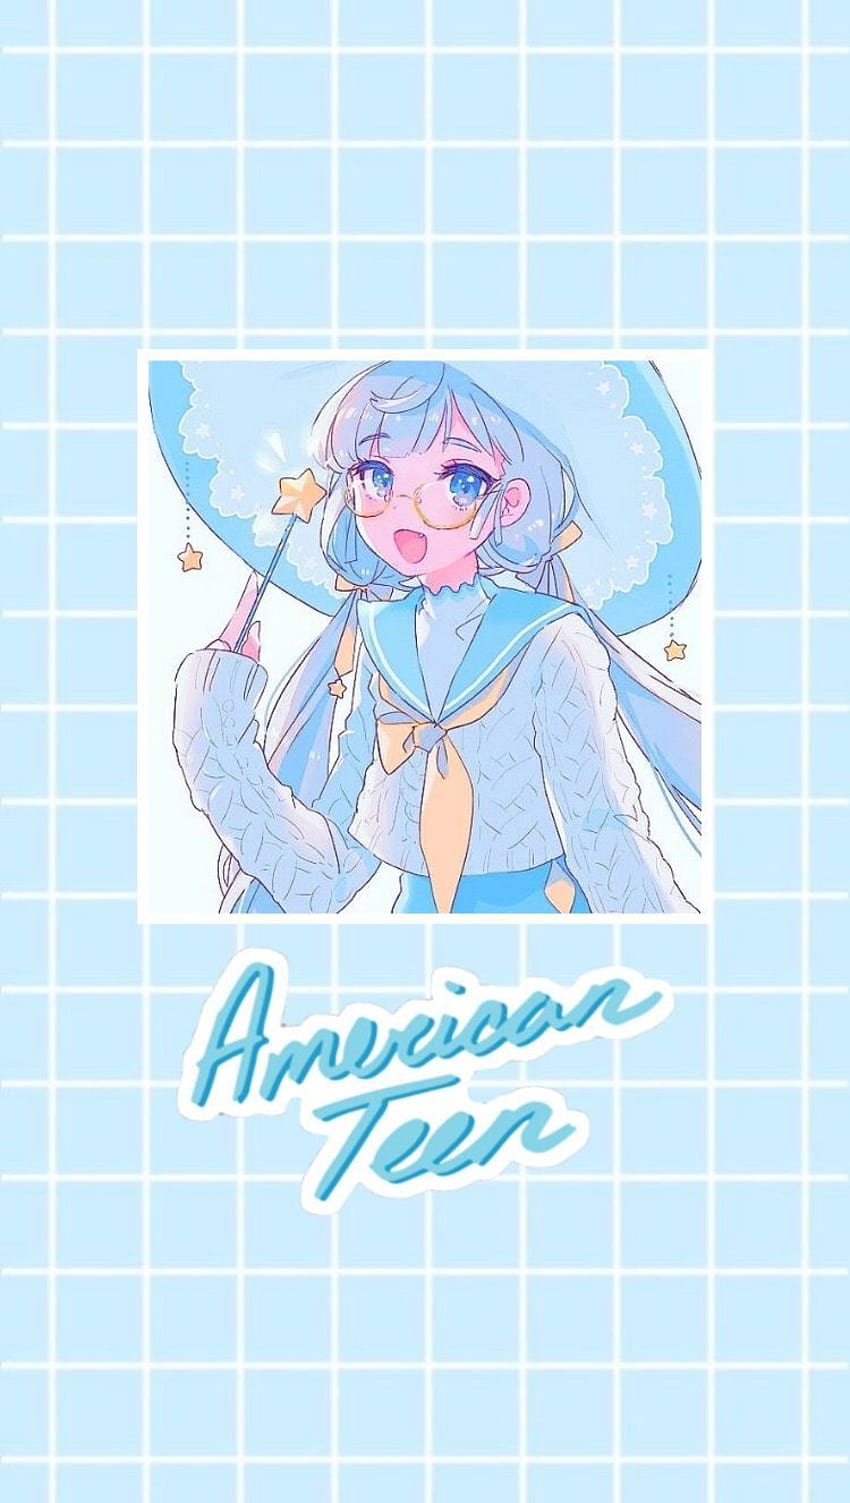 𝐀𝐃𝐀𝐂𝐇𝐈 𝐀𝐍𝐃 𝐒𝐇𝐈𝐌𝐀𝐌𝐔𝐑𝐀 𝐈𝐂𝐎𝐍 𝗉𝗂𝗇𝗍𝖾𝗋𝖾𝗌𝗍  𝗅𝗂𝗅𝗌𝗆𝗂𝗋𝗐  Anime Blue anime Blue aesthetic